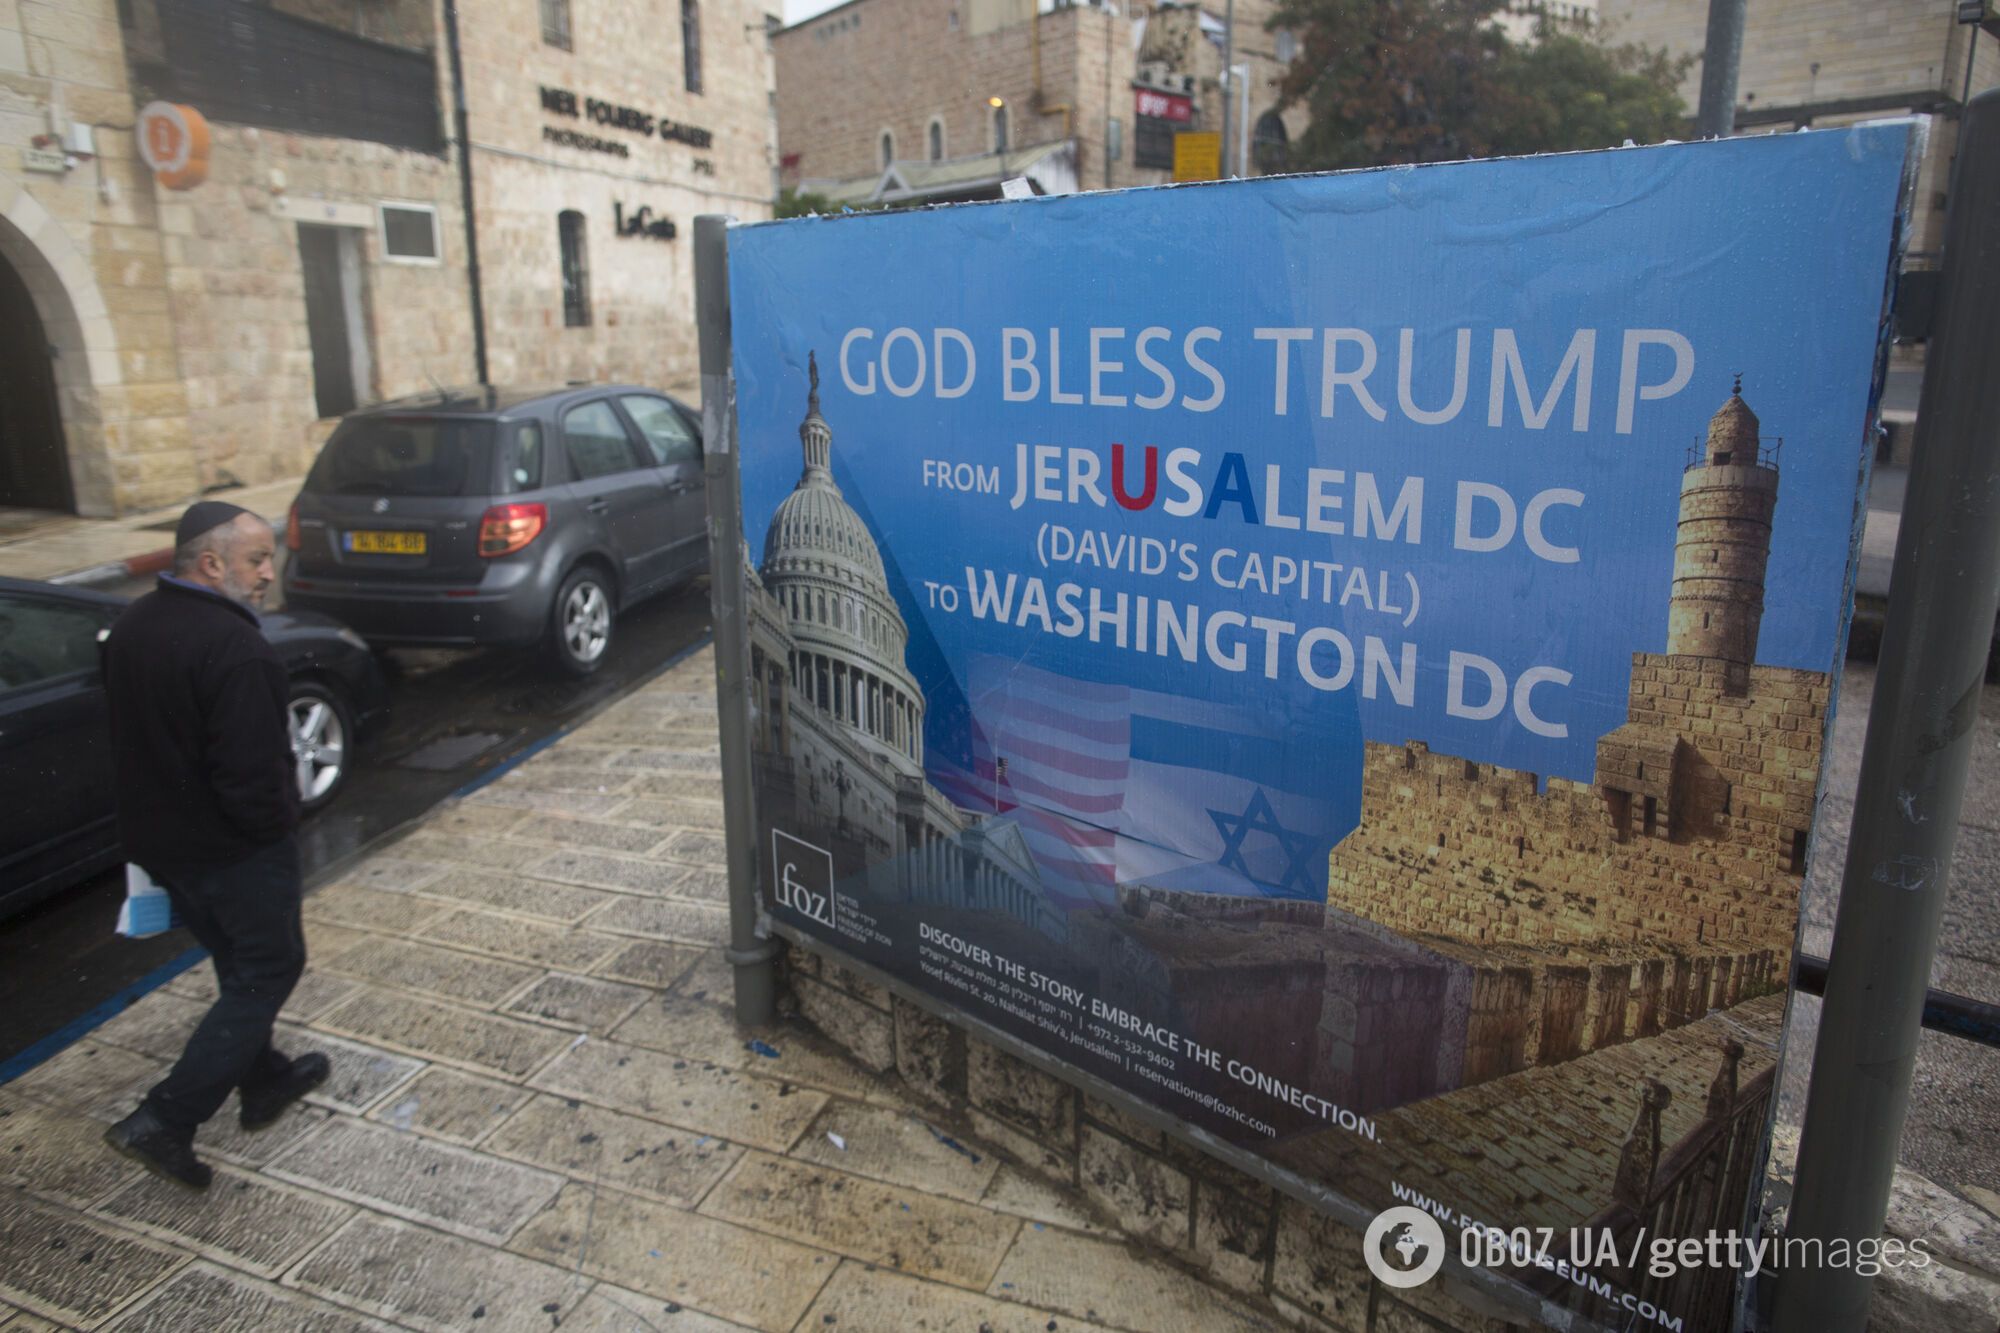  Иерусалим - столица Израиля: мир "взорвало" историческое событие. Фоторепортаж